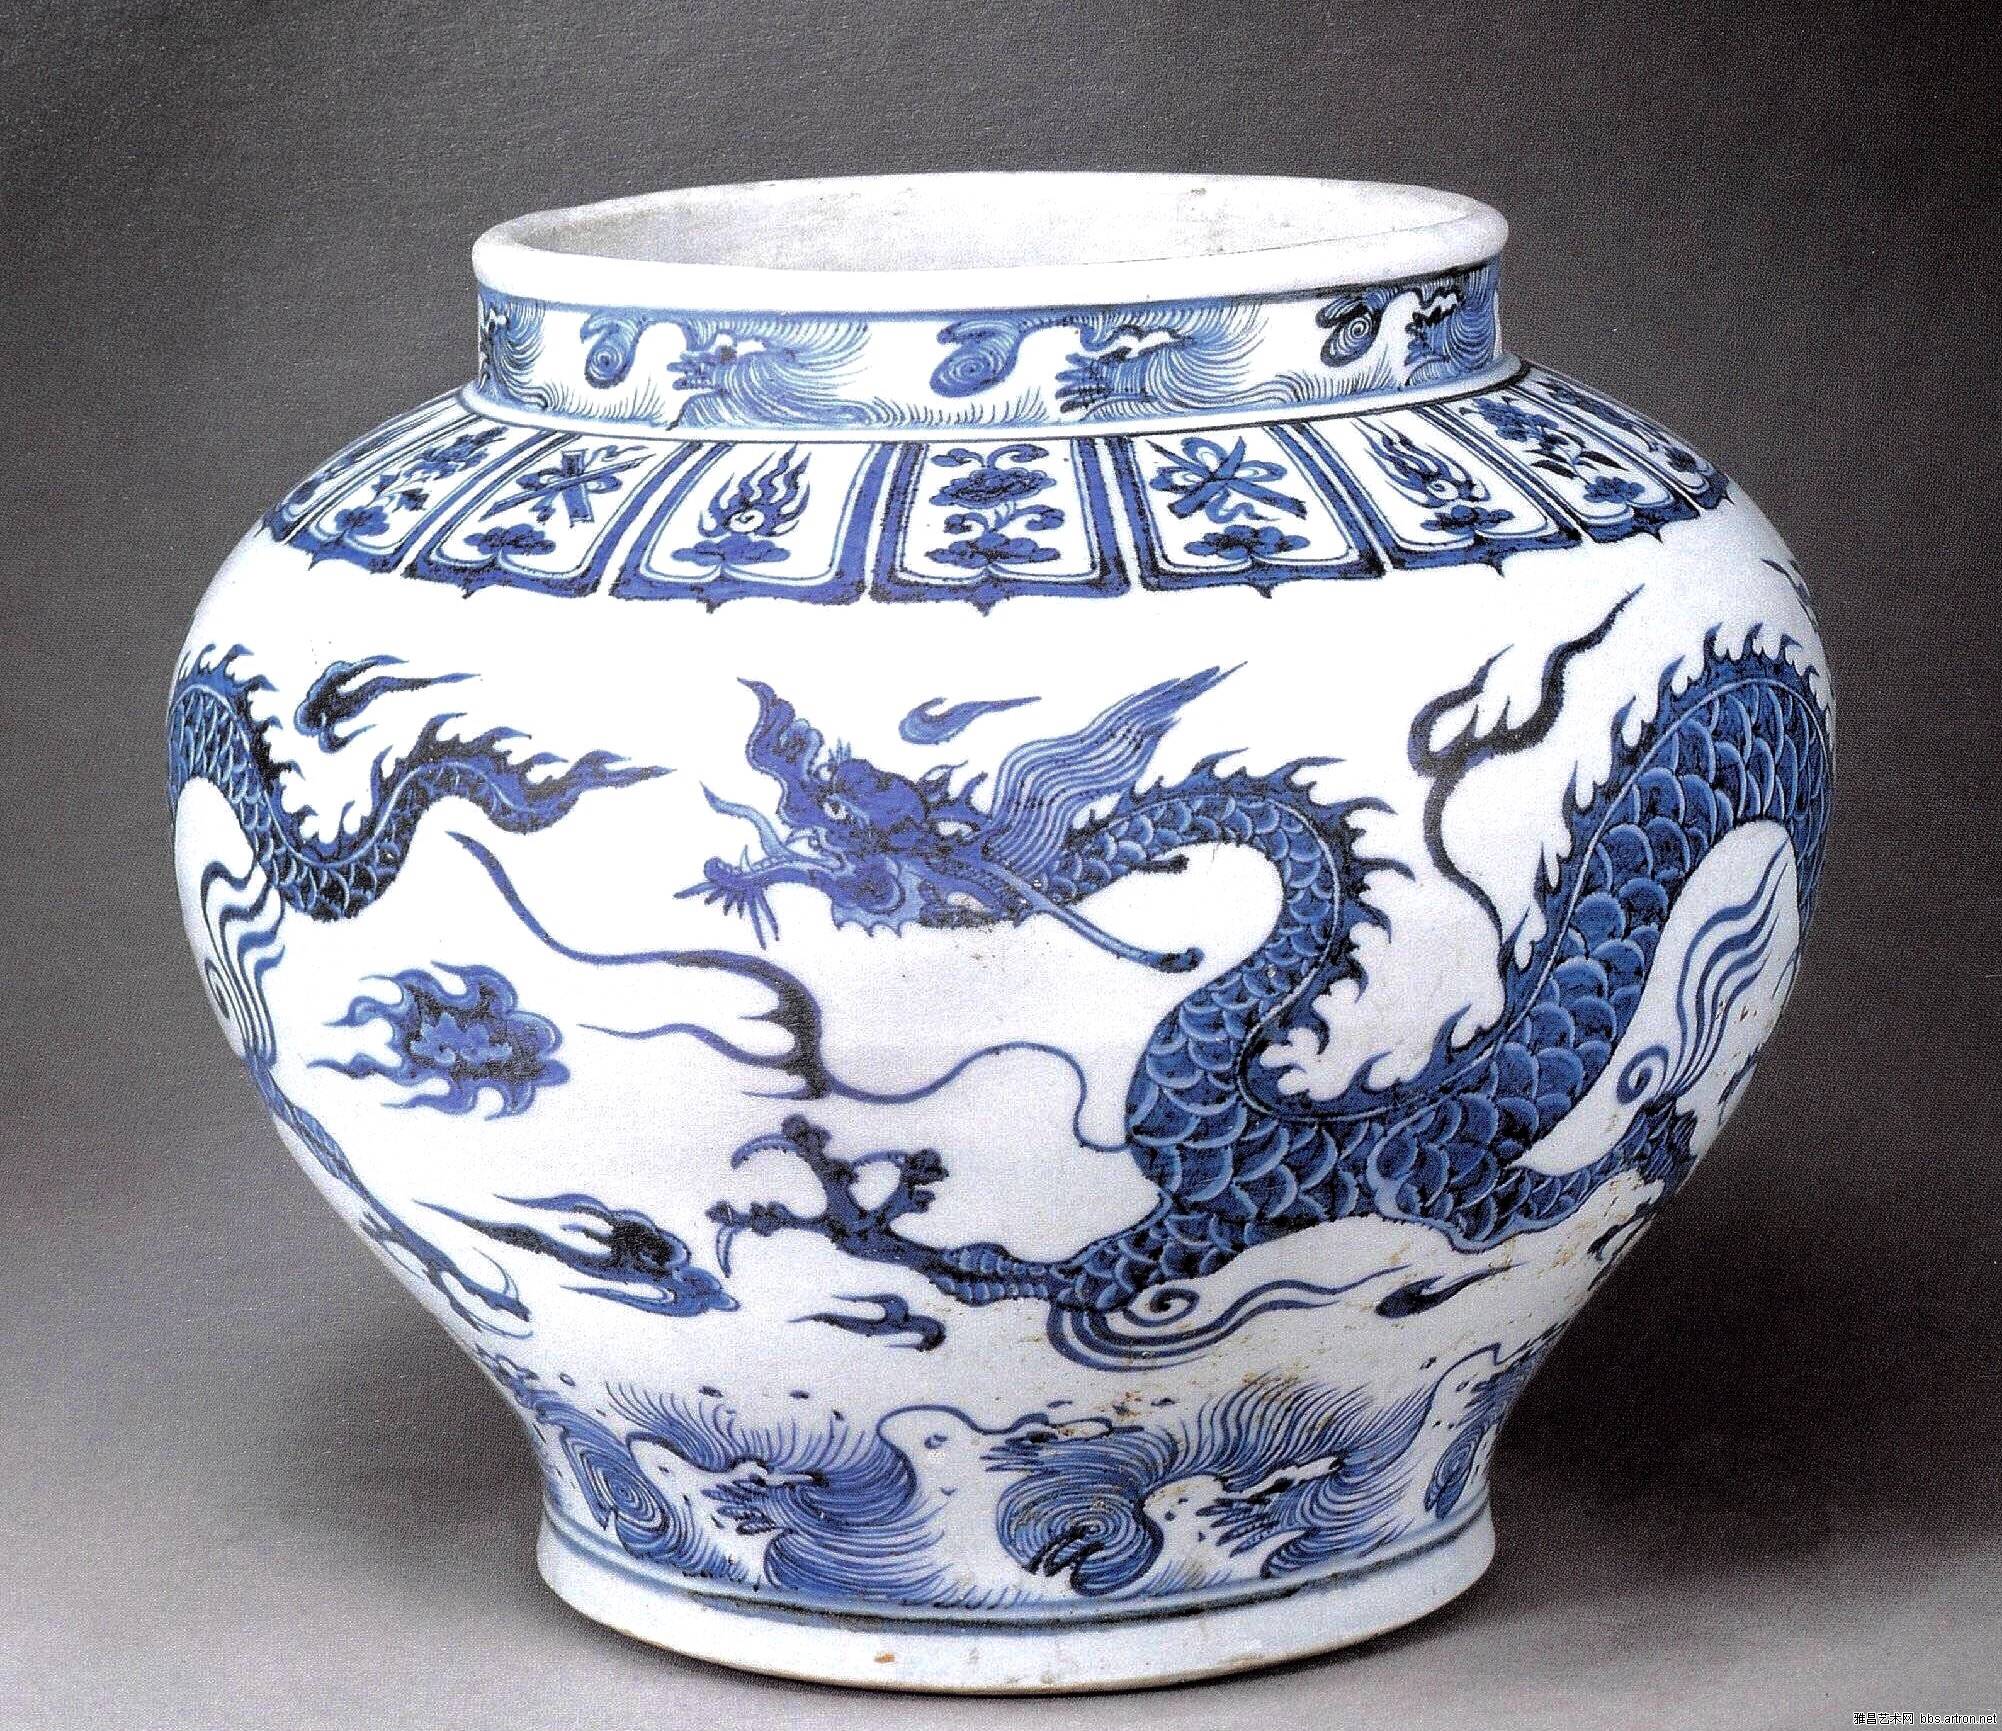 最高の品質の 陶芸 中国磁器 NW544612 磁器『官磁器碗一対』施釉陶 收藏品 置物 精美彫 陶芸 古代工芸品 清